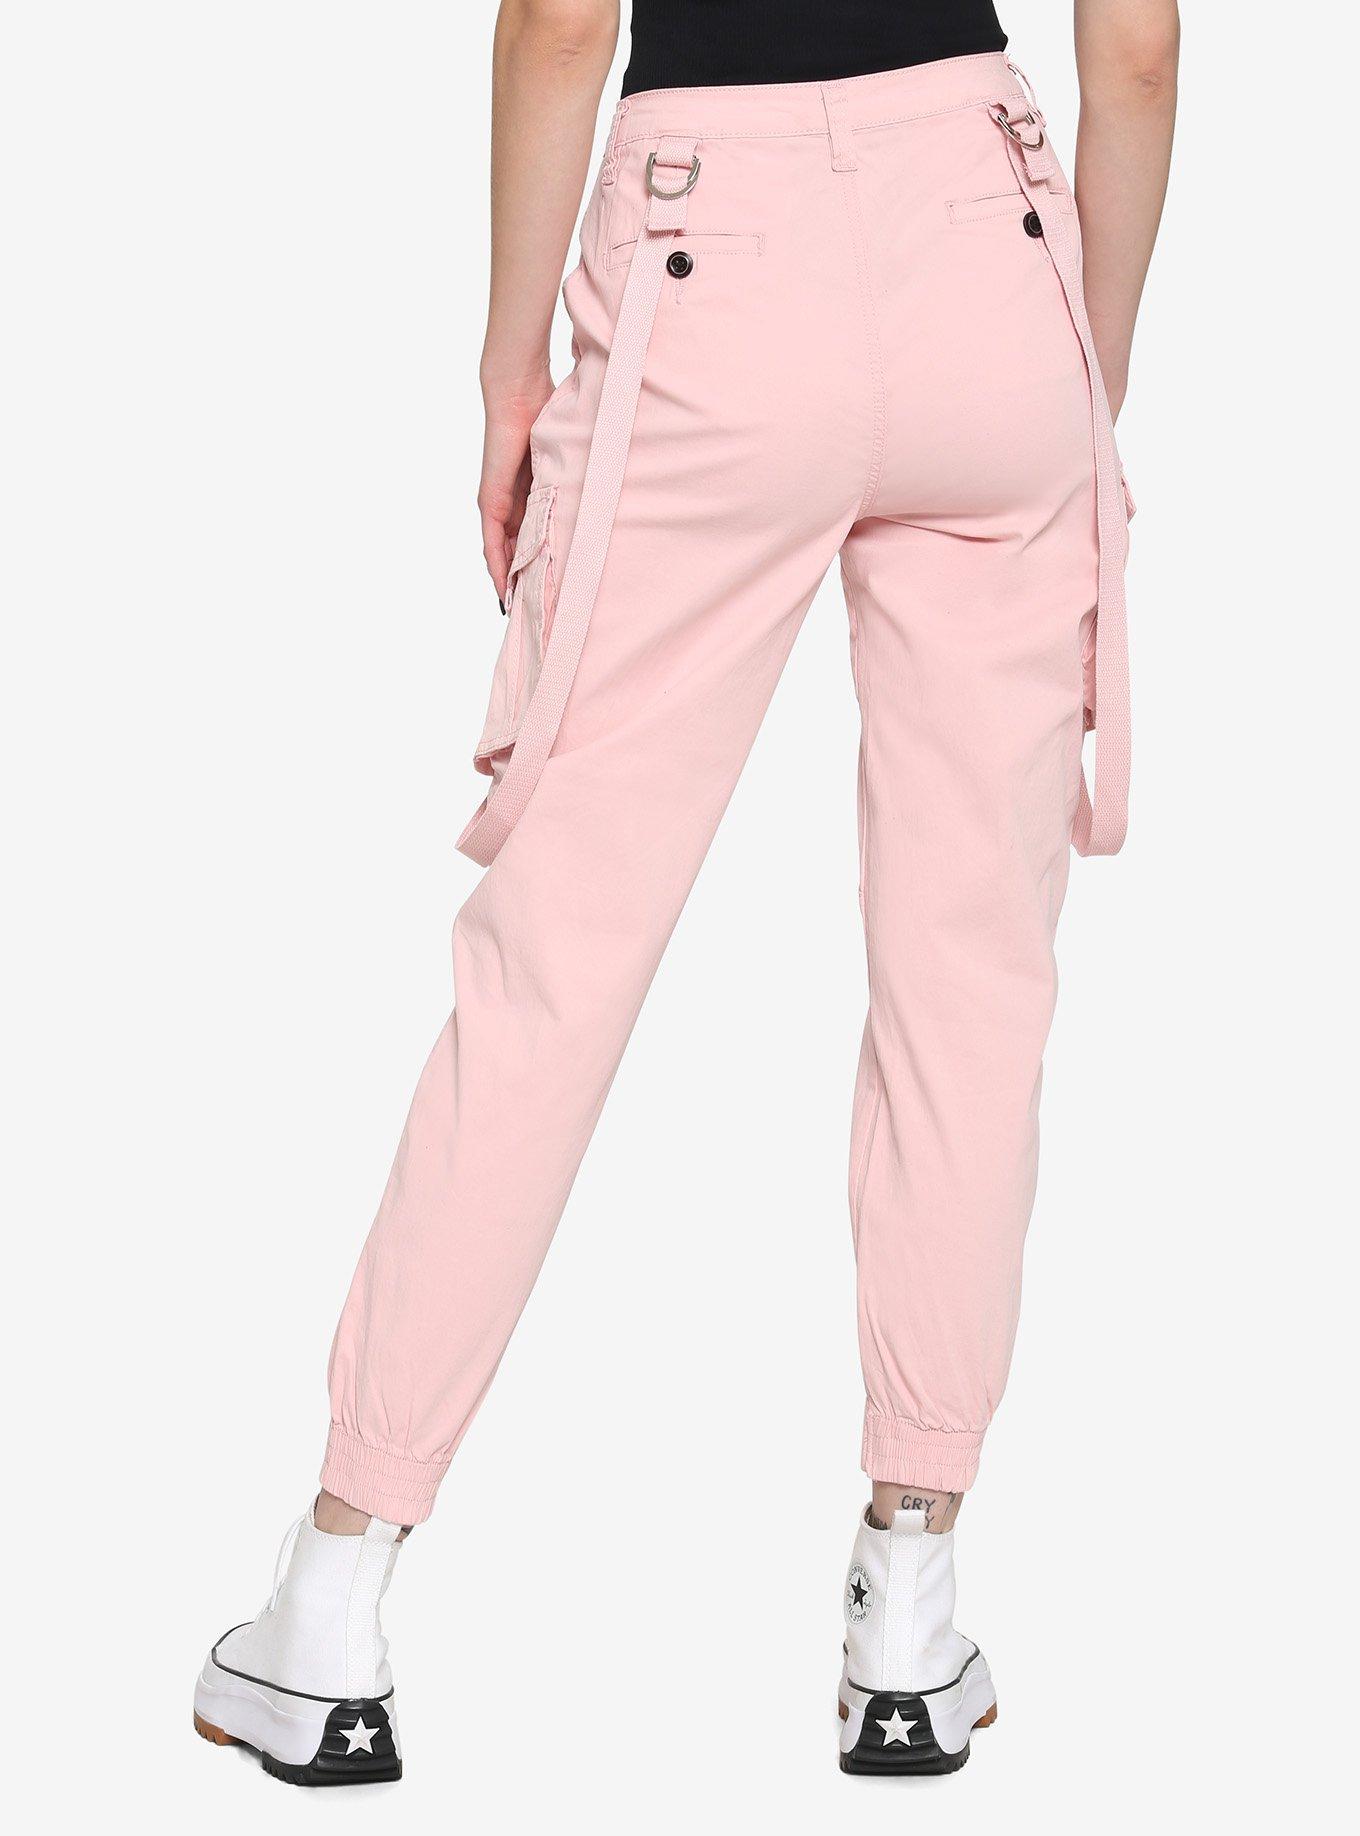 Pink D-Ring Suspender Jogger Pants, PINK, alternate